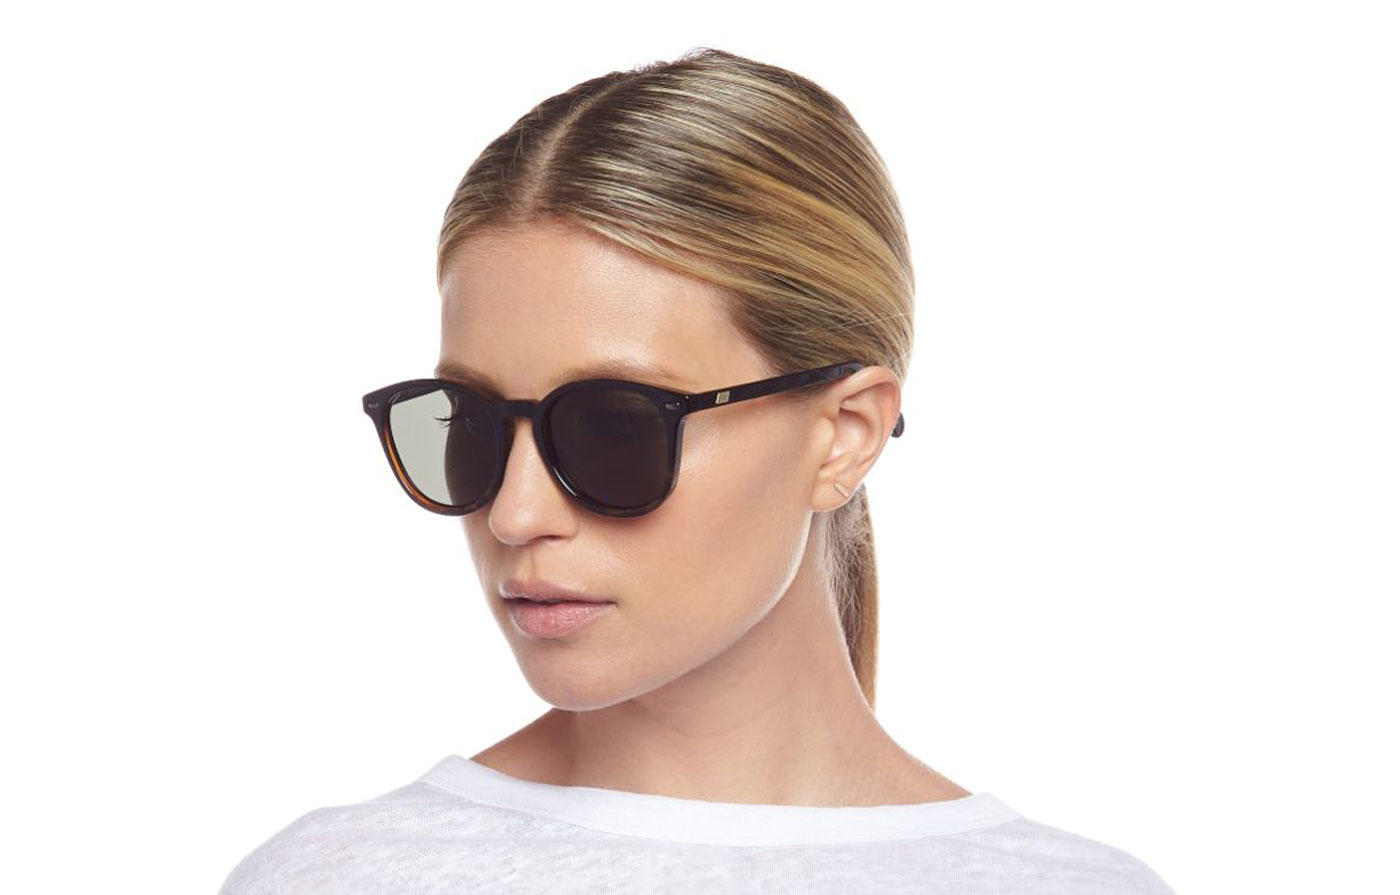 Le Specs Bandwagon Sunglasses - Black Tort / Khaki - Tortoise+Black